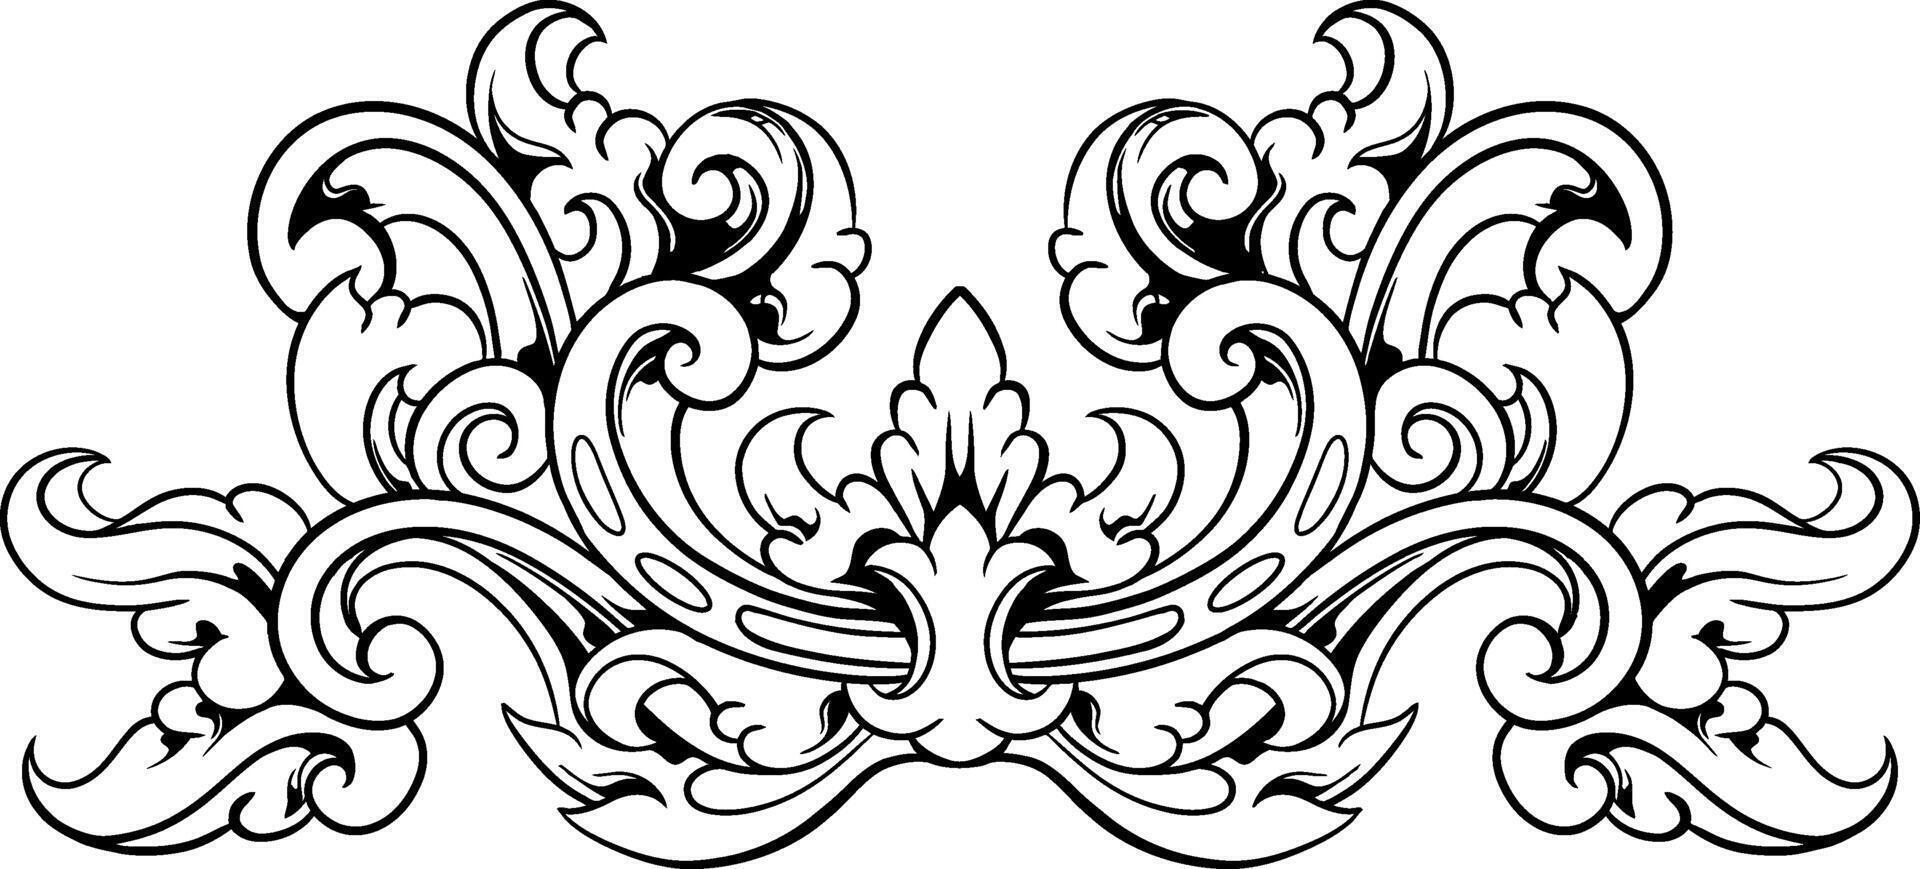 vintage barroco vitoriano quadro, Armação fronteira floral enfeite folha rolagem gravado retro flor padronizar decorativo Projeto tatuagem Preto e branco vetor